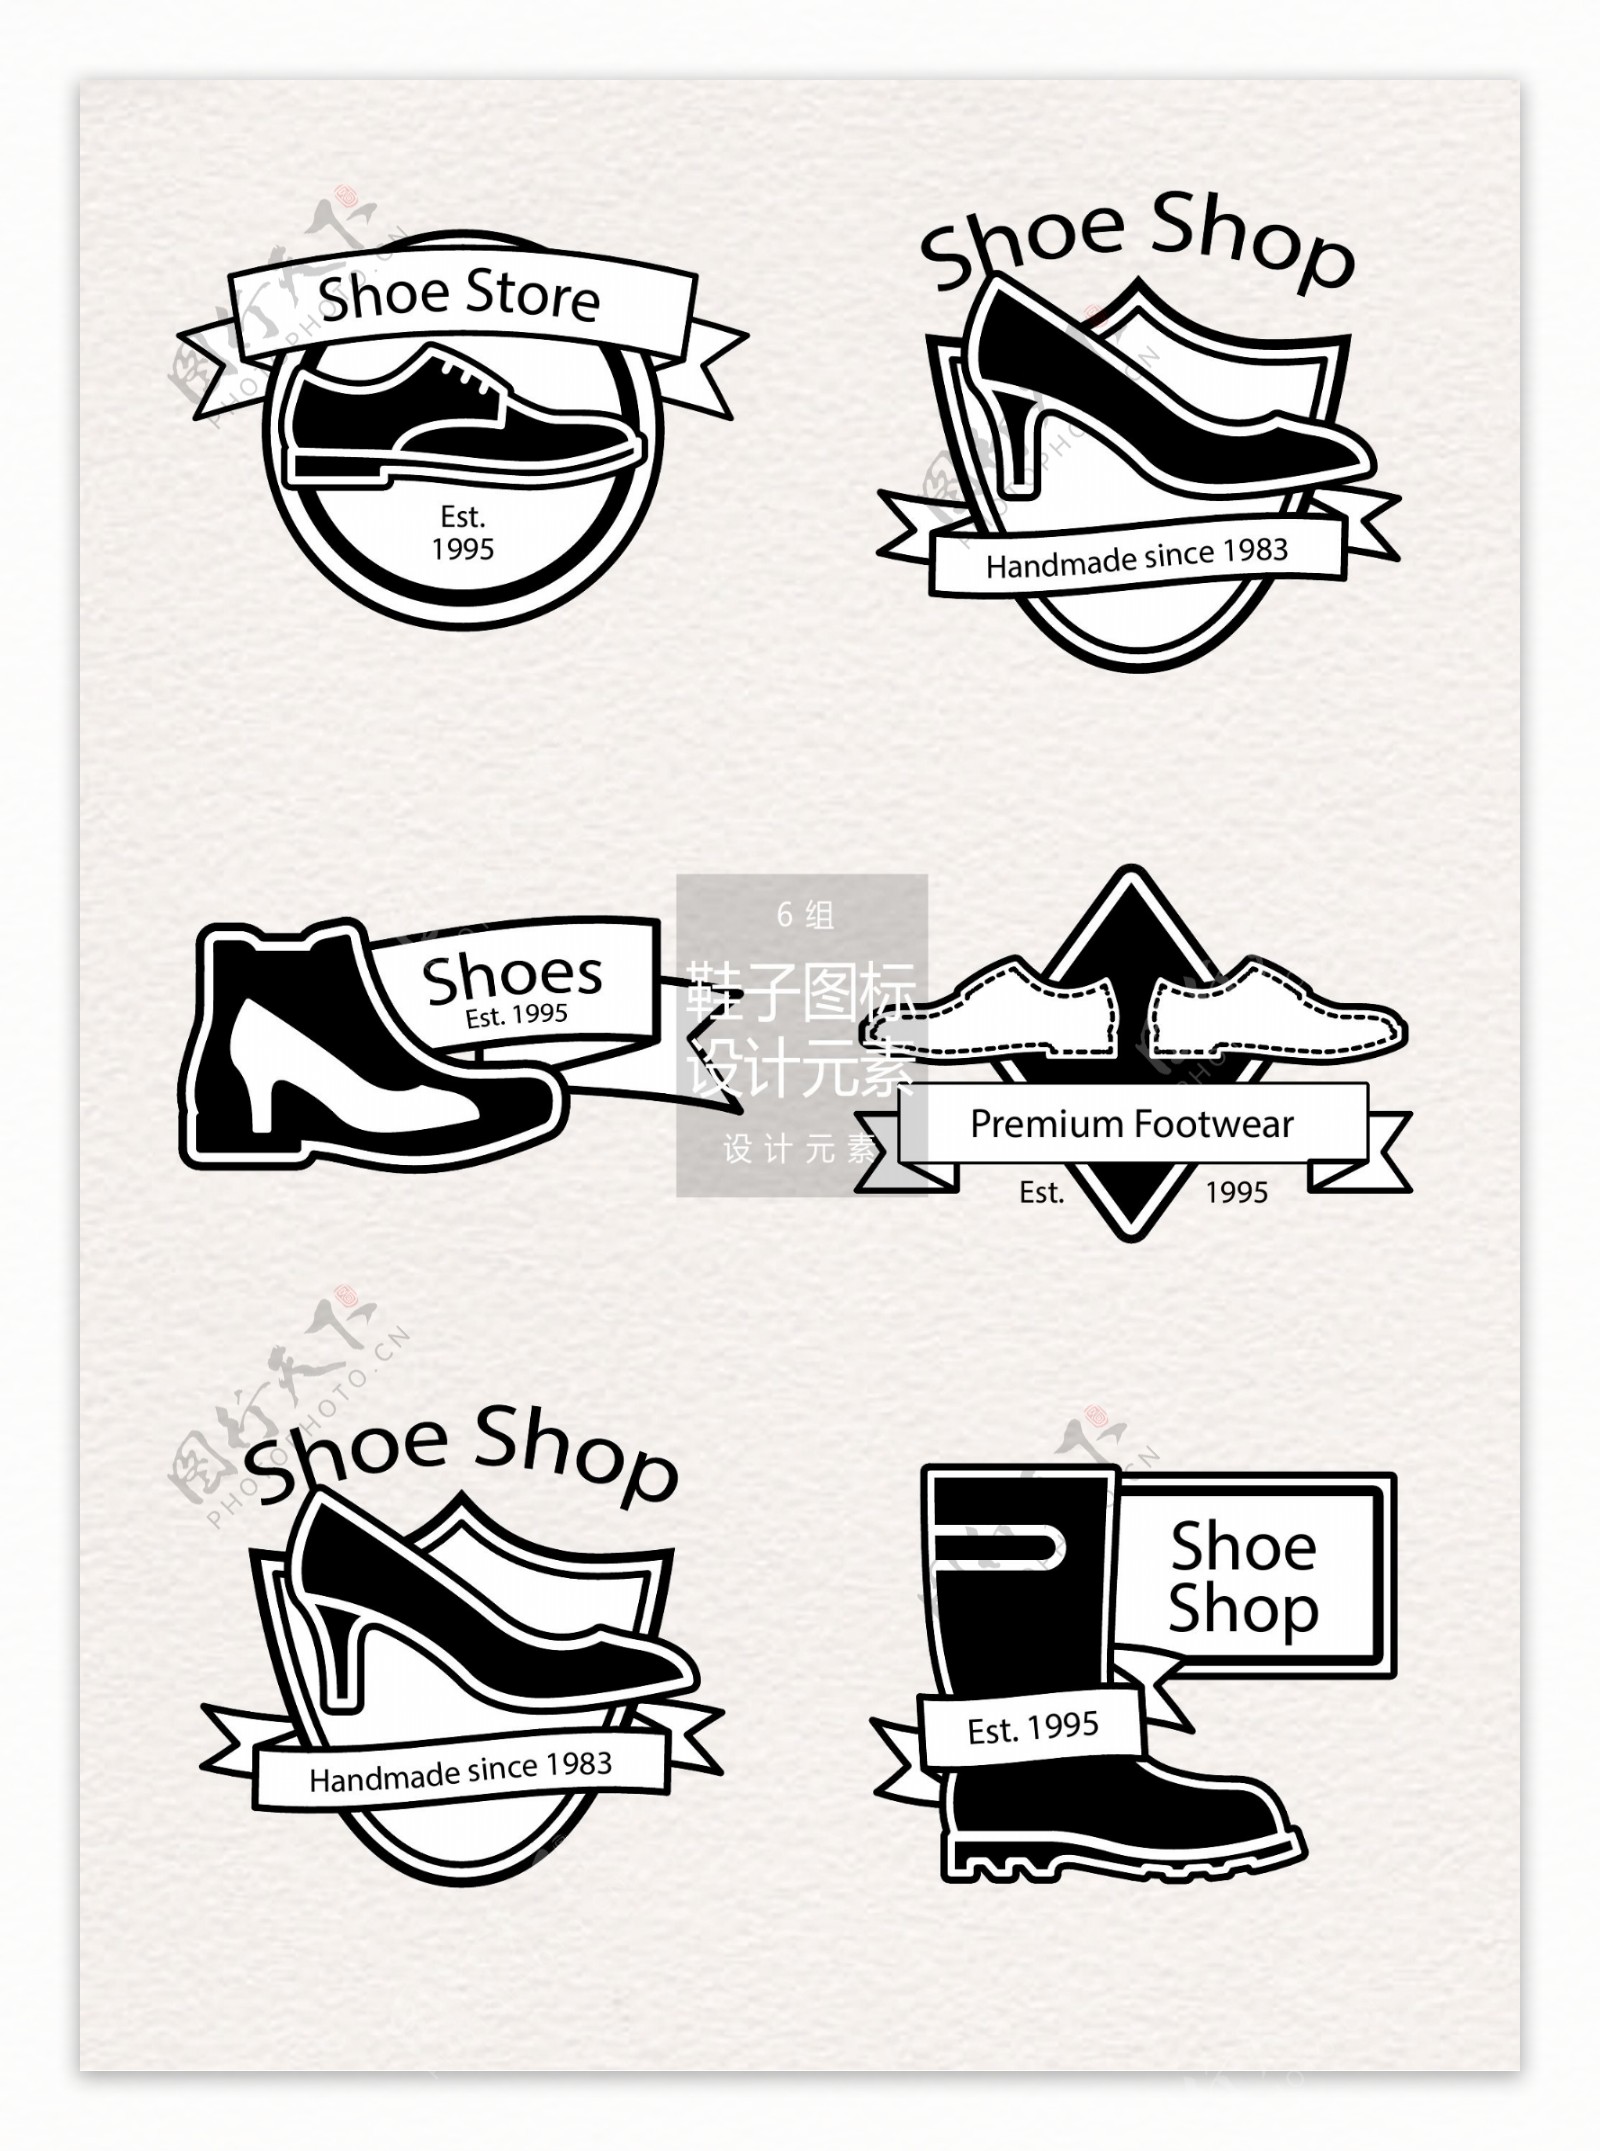 黑白鞋子图标设计元素